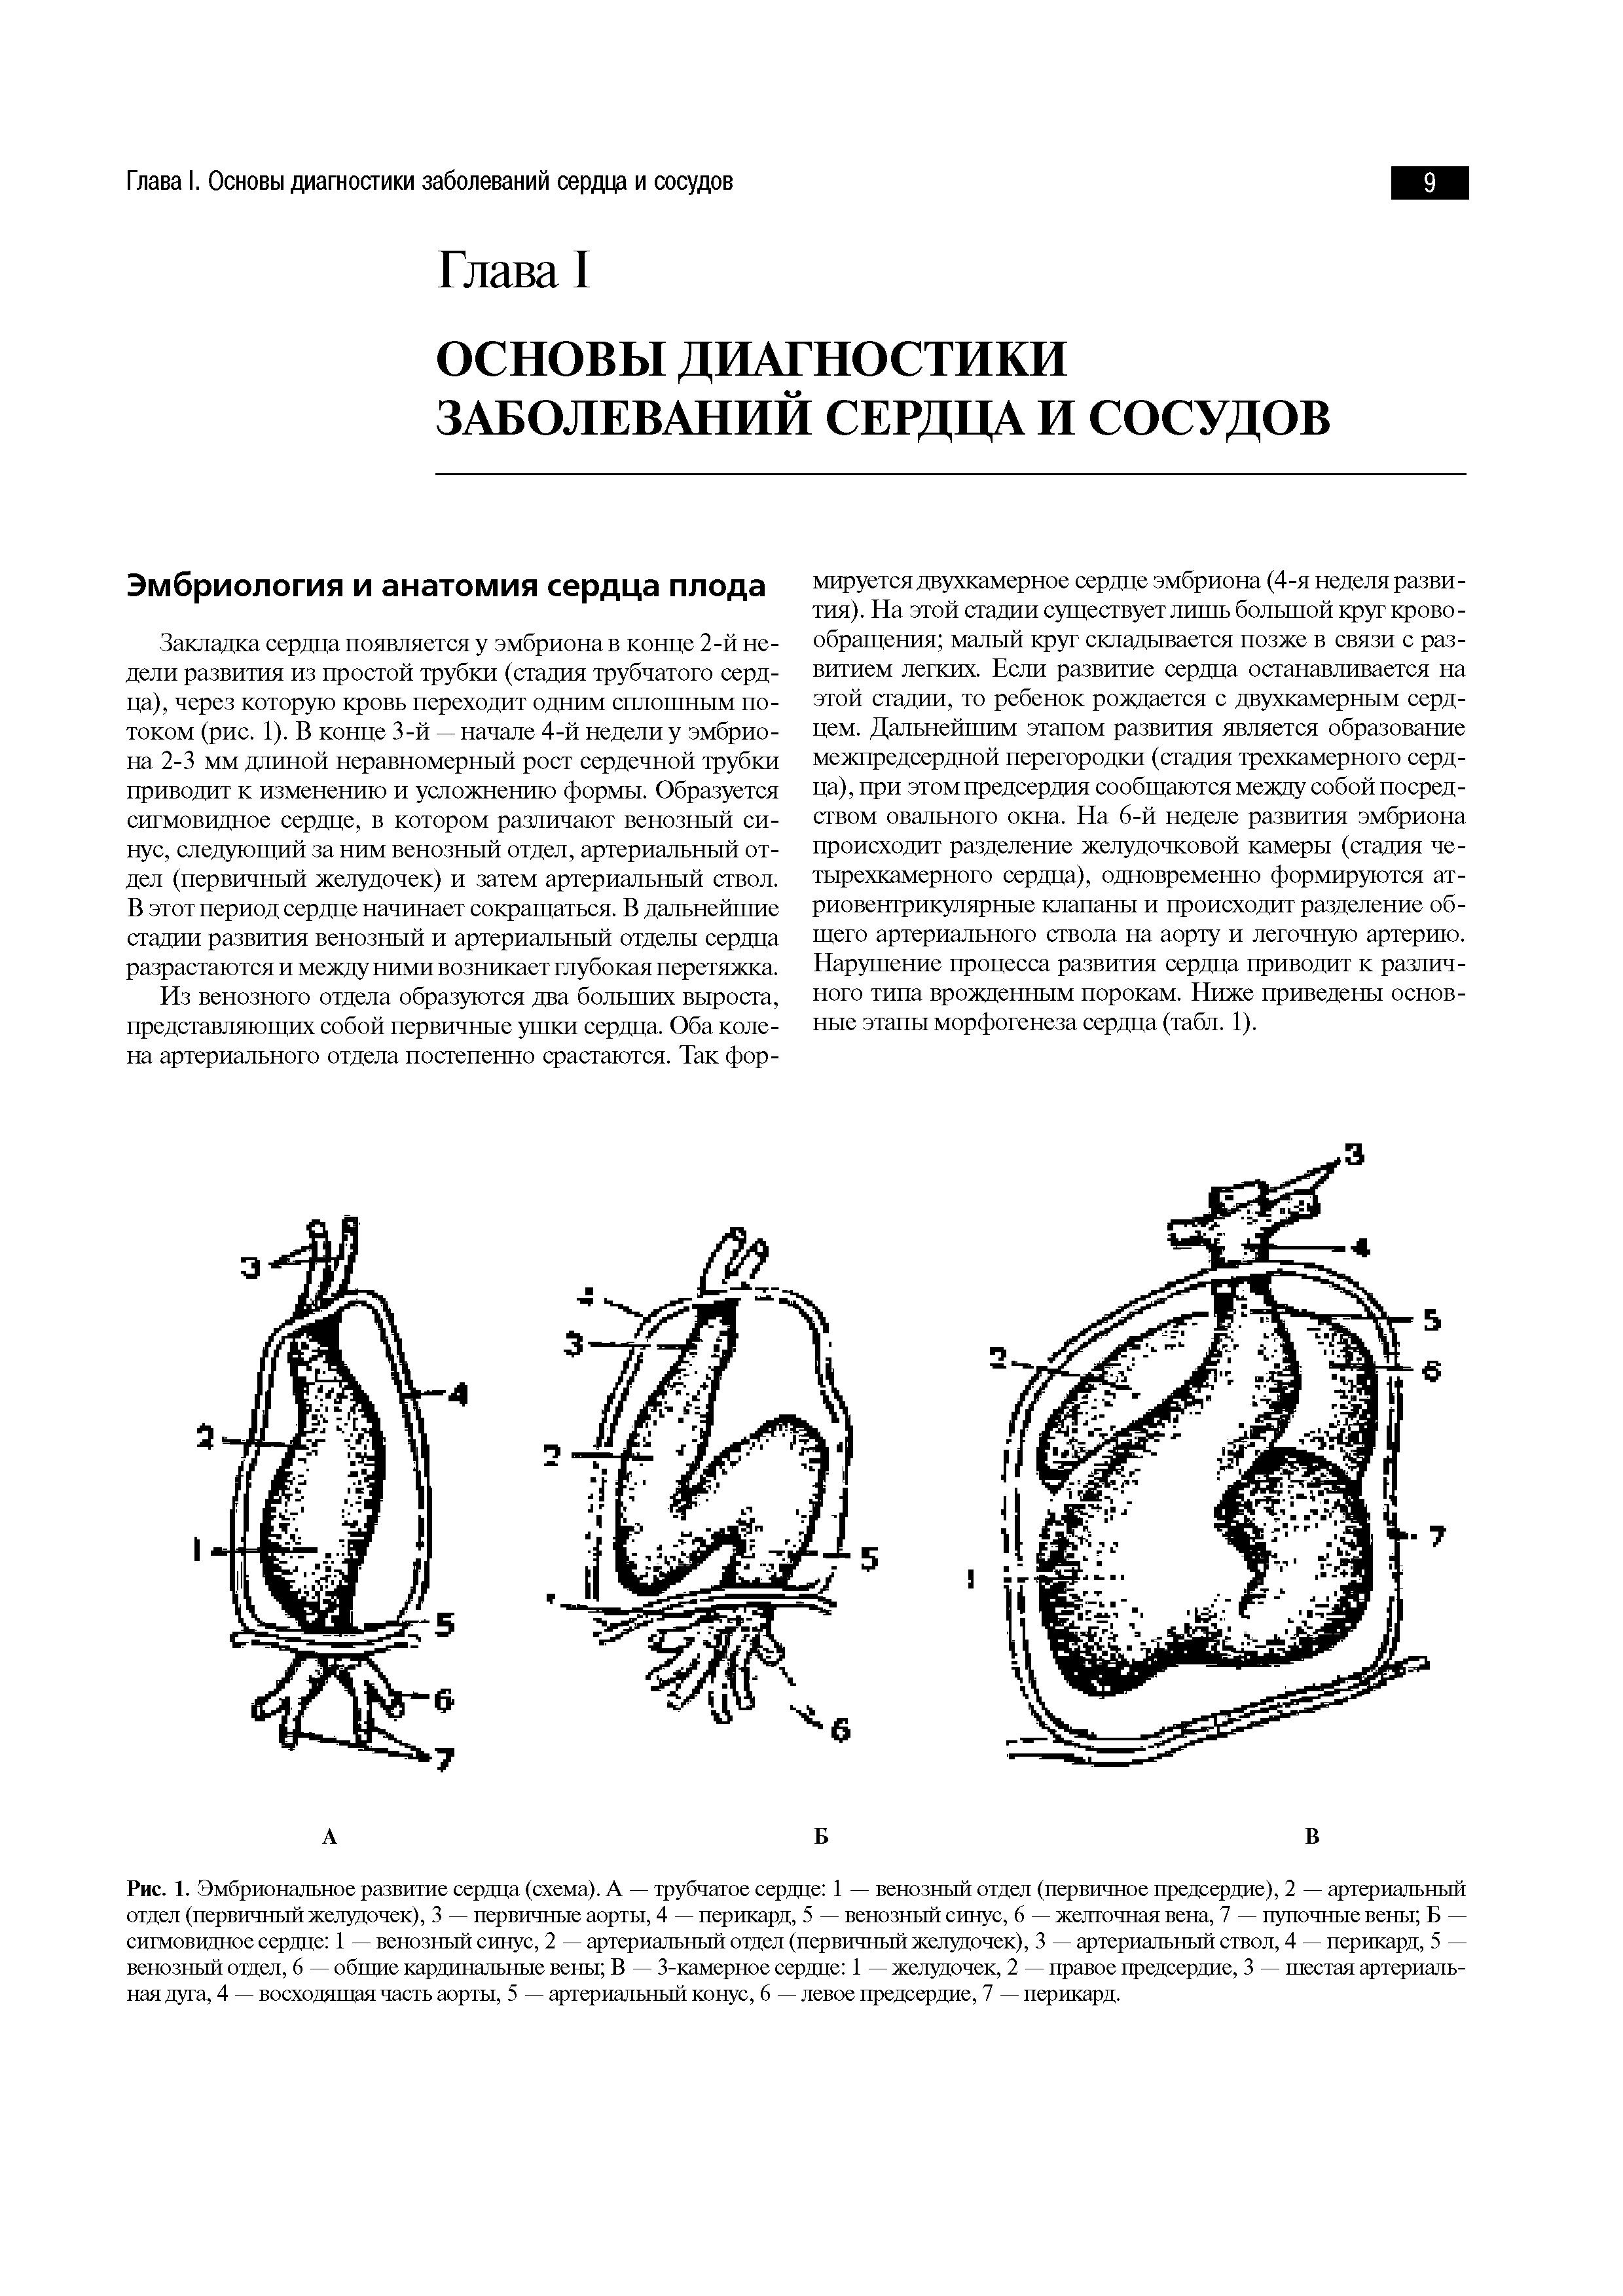 Рис. 1. Эмбриональное развитие сердца (схема). А — трубчатое сердце 1 — венозный отдел (первичное предсердие), 2 — артериальный отдел (первичный желудочек), 3 — первичные аорты, 4 — перикард, 5 — венозный синус, 6 — желточная вена, 7 — пупочные вены Б — сигмовидное сердце 1 — венозный синус, 2 — артериальный отдел (первичный желудочек), 3 — артериальный ствол, 4 — перикард, 5 — венозный отдел, 6 — общие кардинальные вены В — 3-камерное сердце 1 — желудочек, 2 — правое предсердие, 3 — шестая артериальная дуга, 4 — восходящая часть аорты, 5 — артериальный конус, 6 — левое предсердие, 7 — перикард.